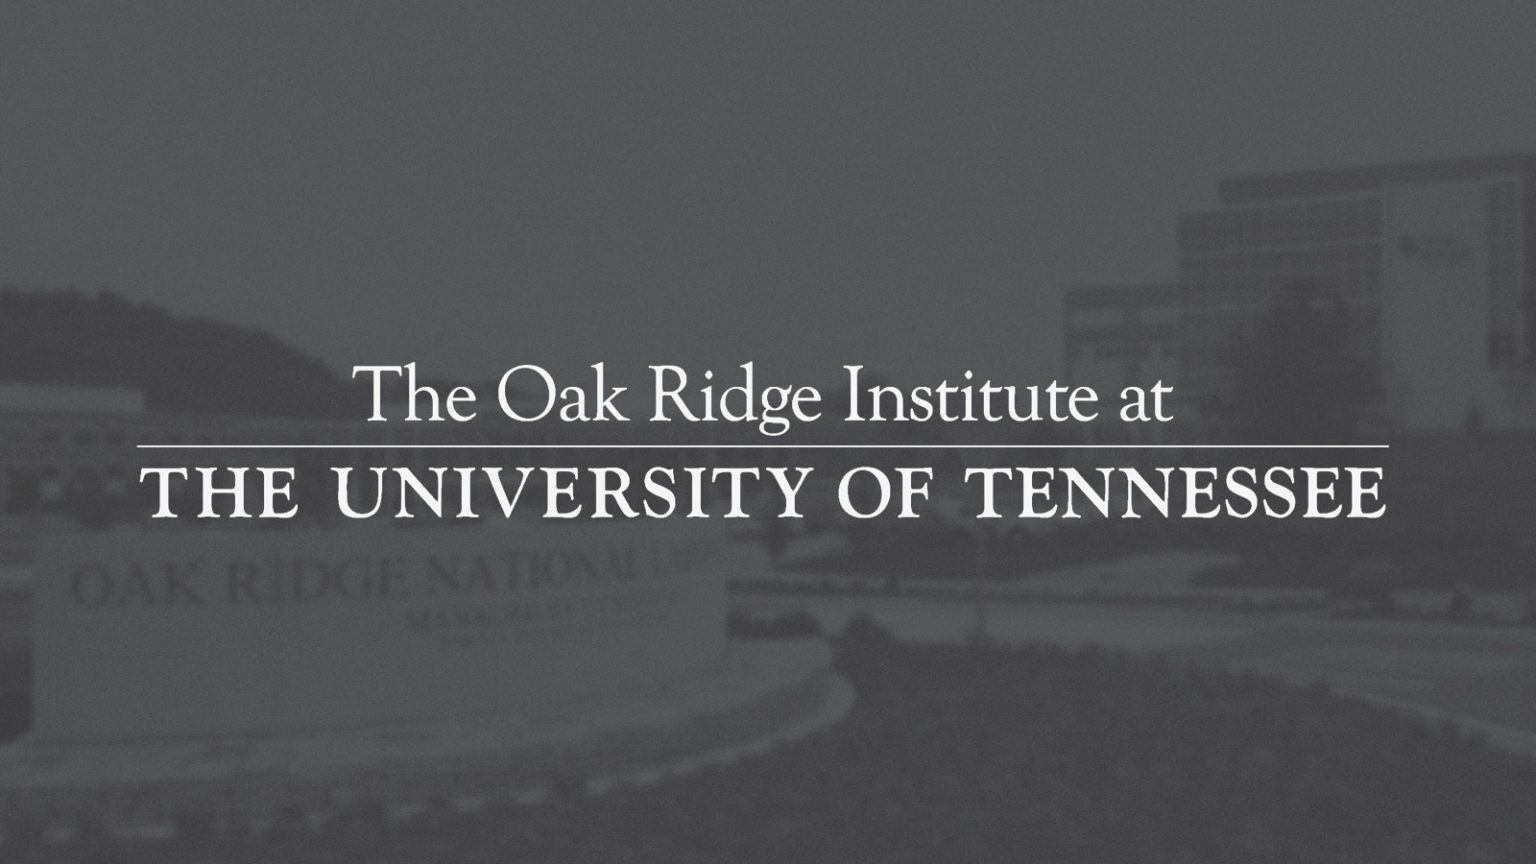 Oak Ridge Institute